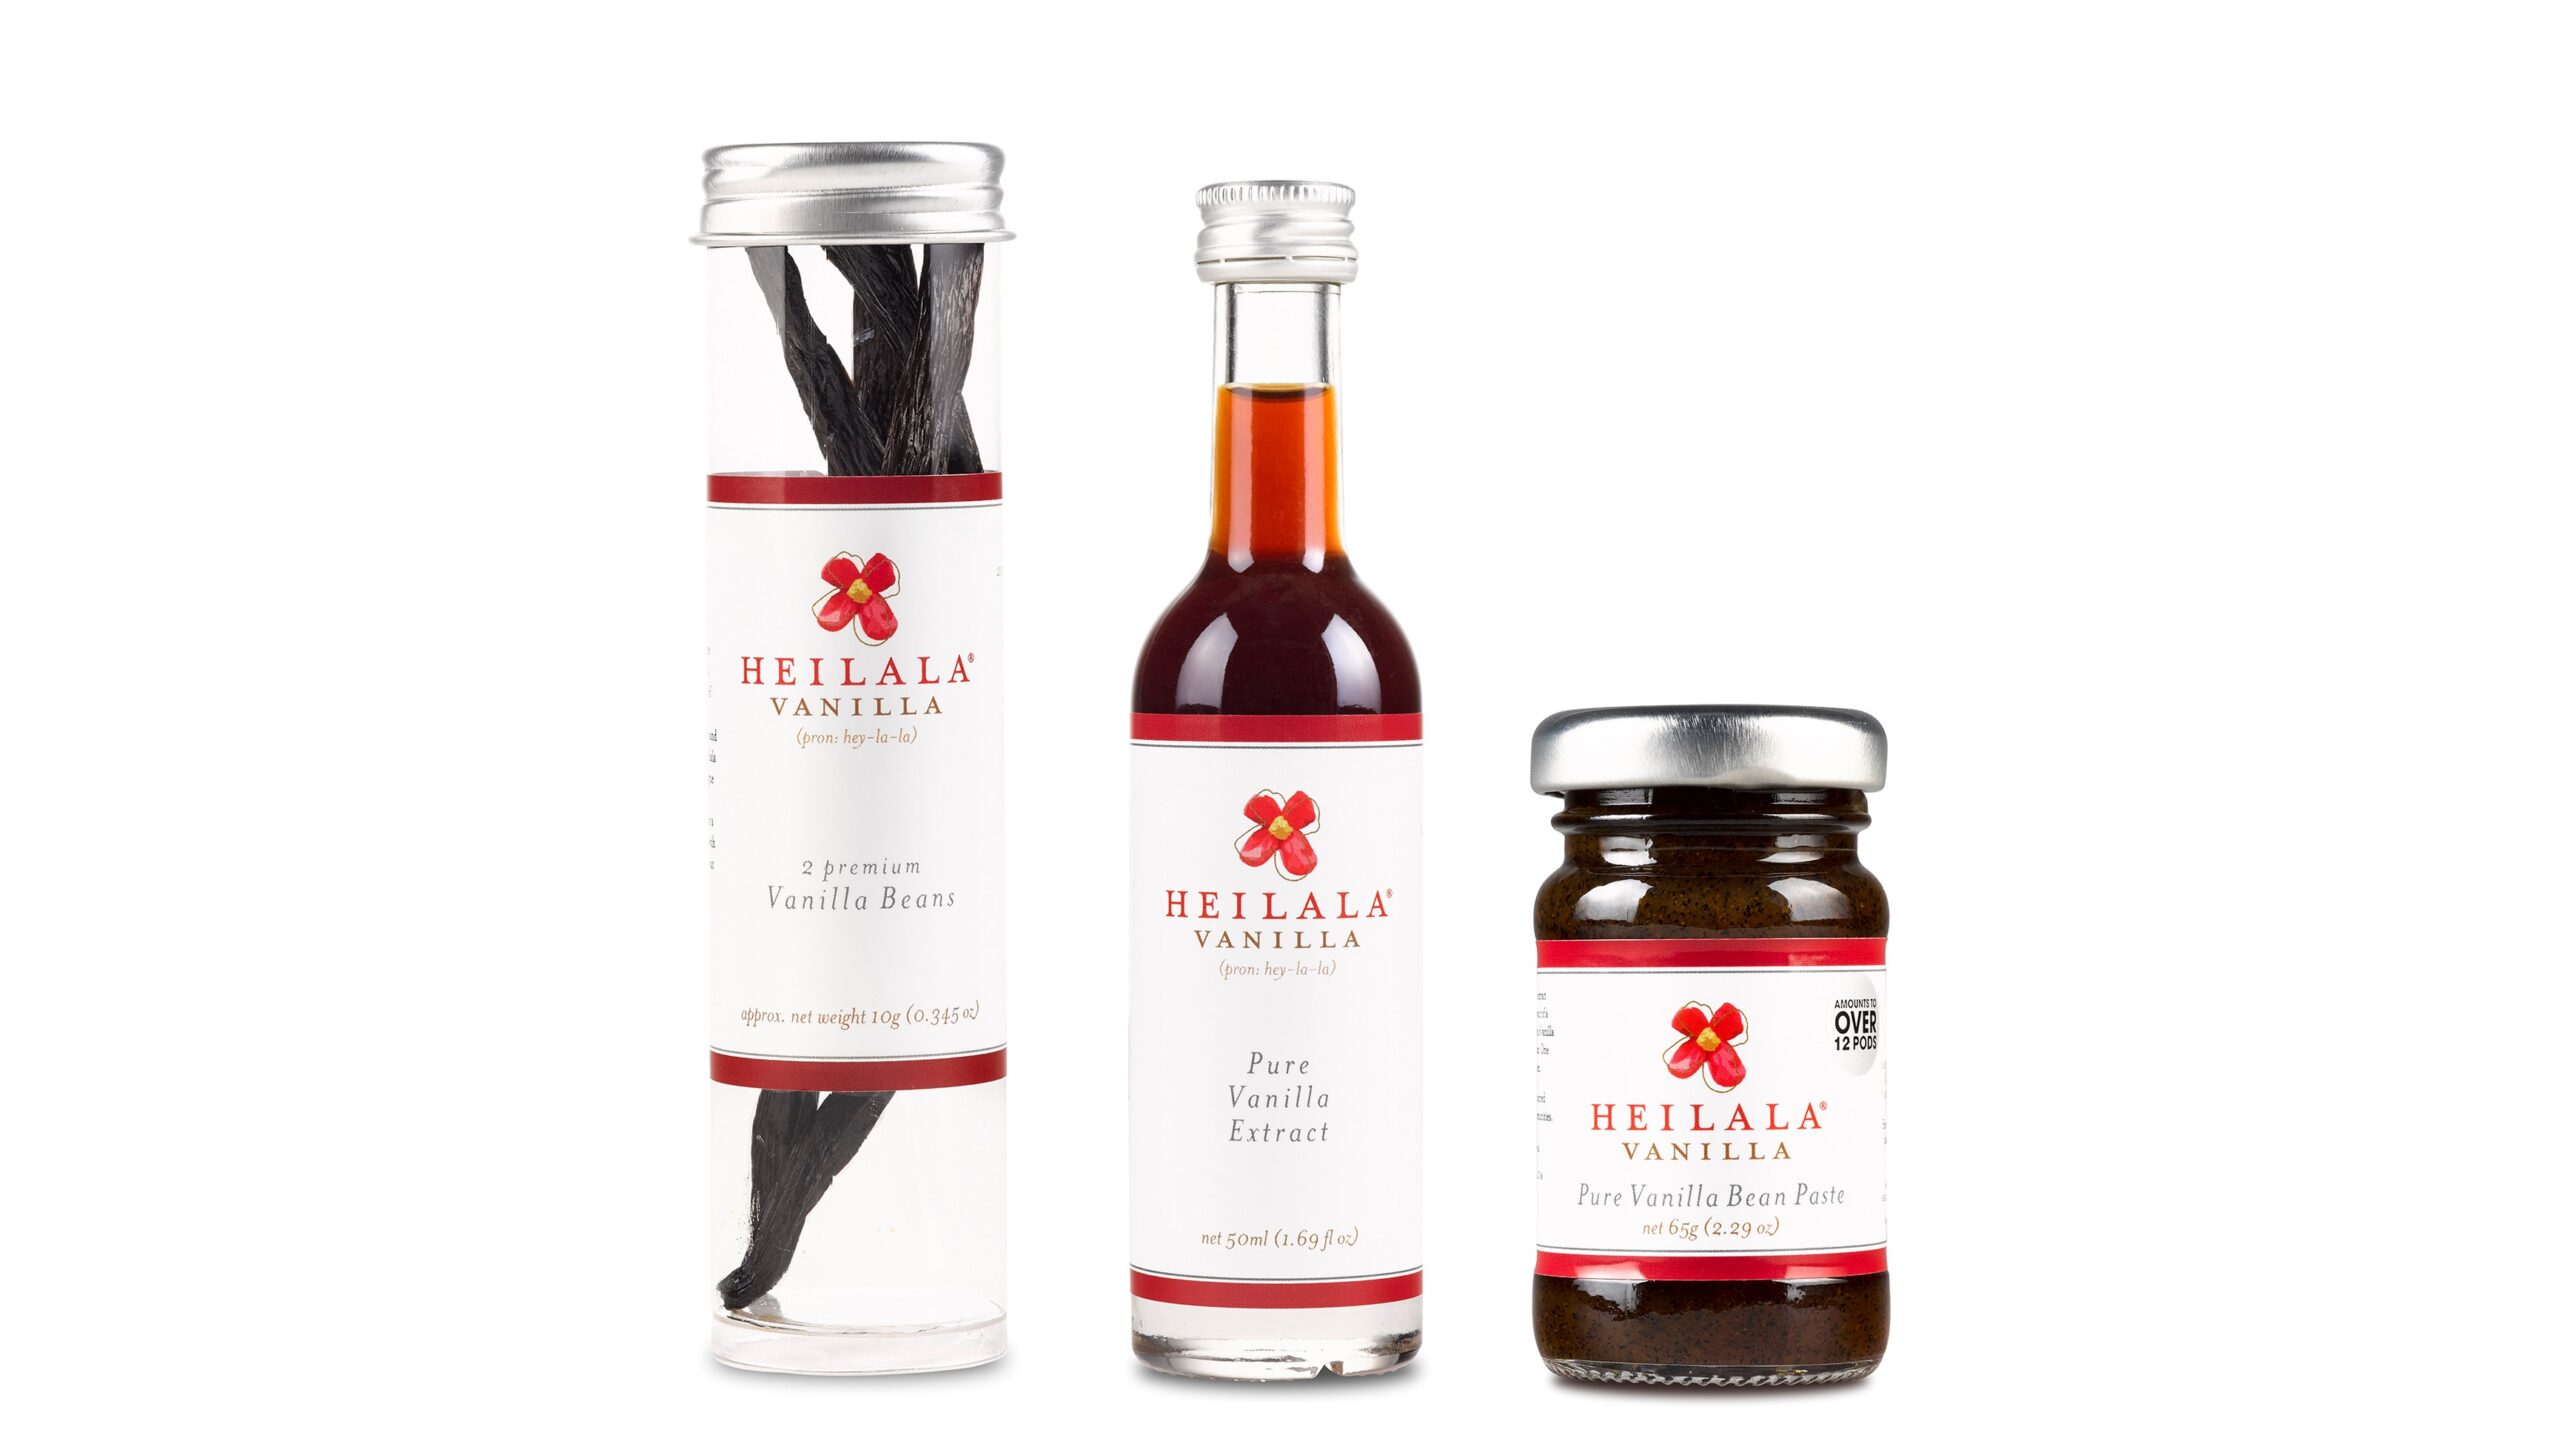 Heilala Vanilla products